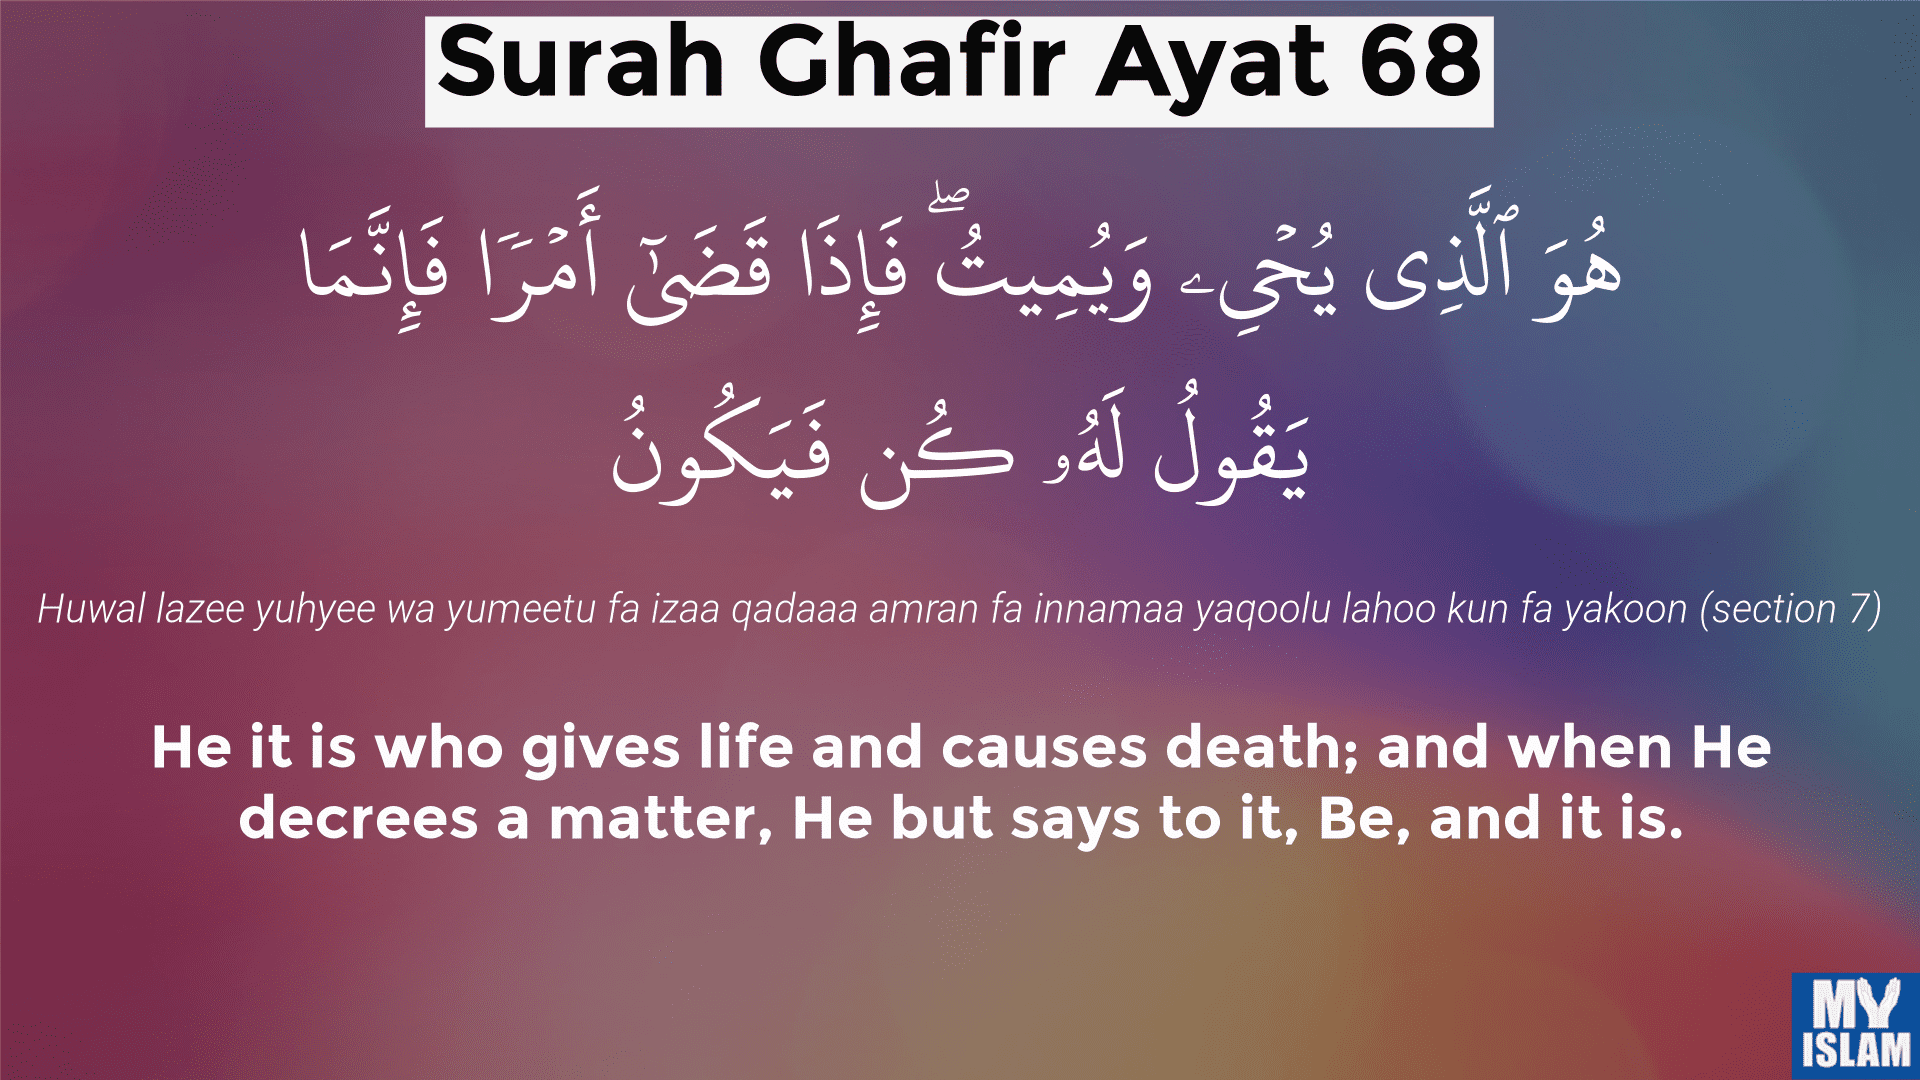 surah-ghafir-ayat-68.png